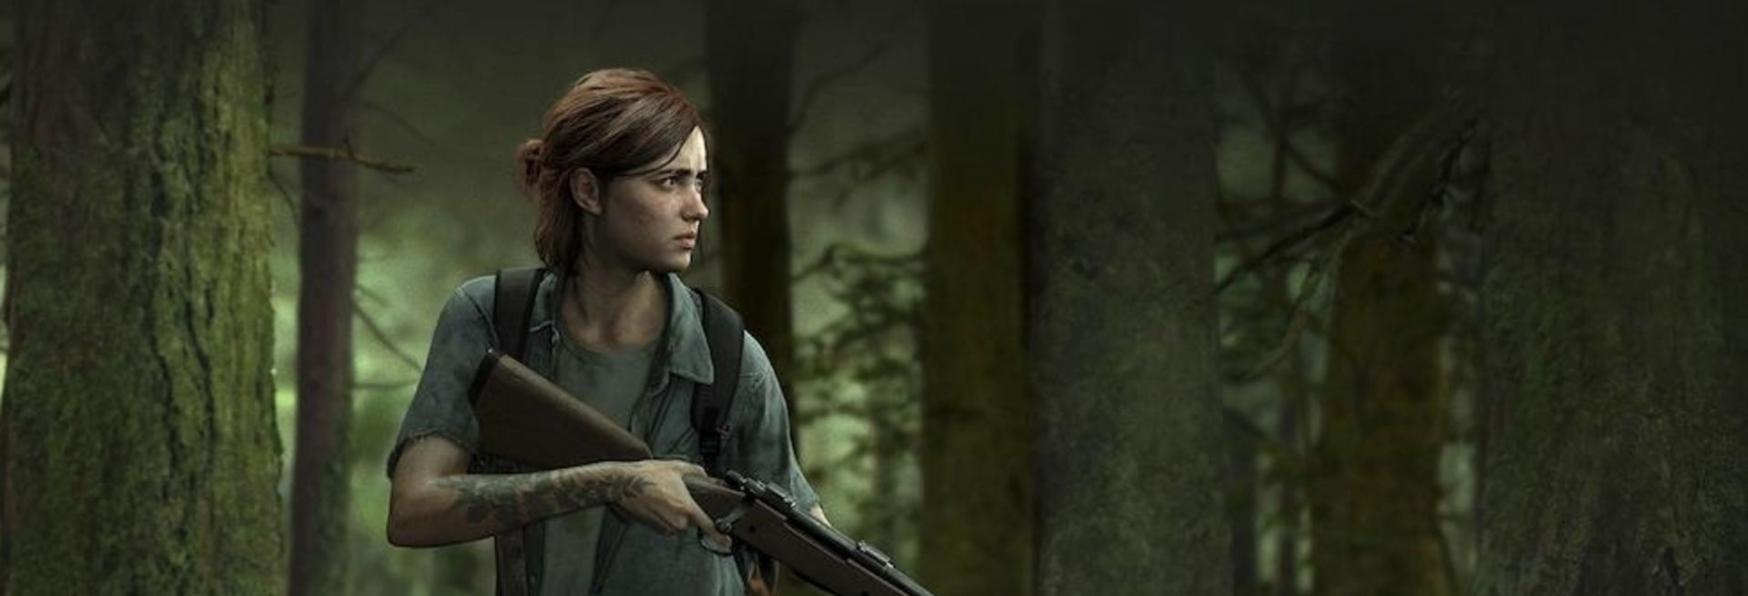 The Last of Us: la Serie TV di HBO avrà una Grande Differenza rispetto al Videogioco